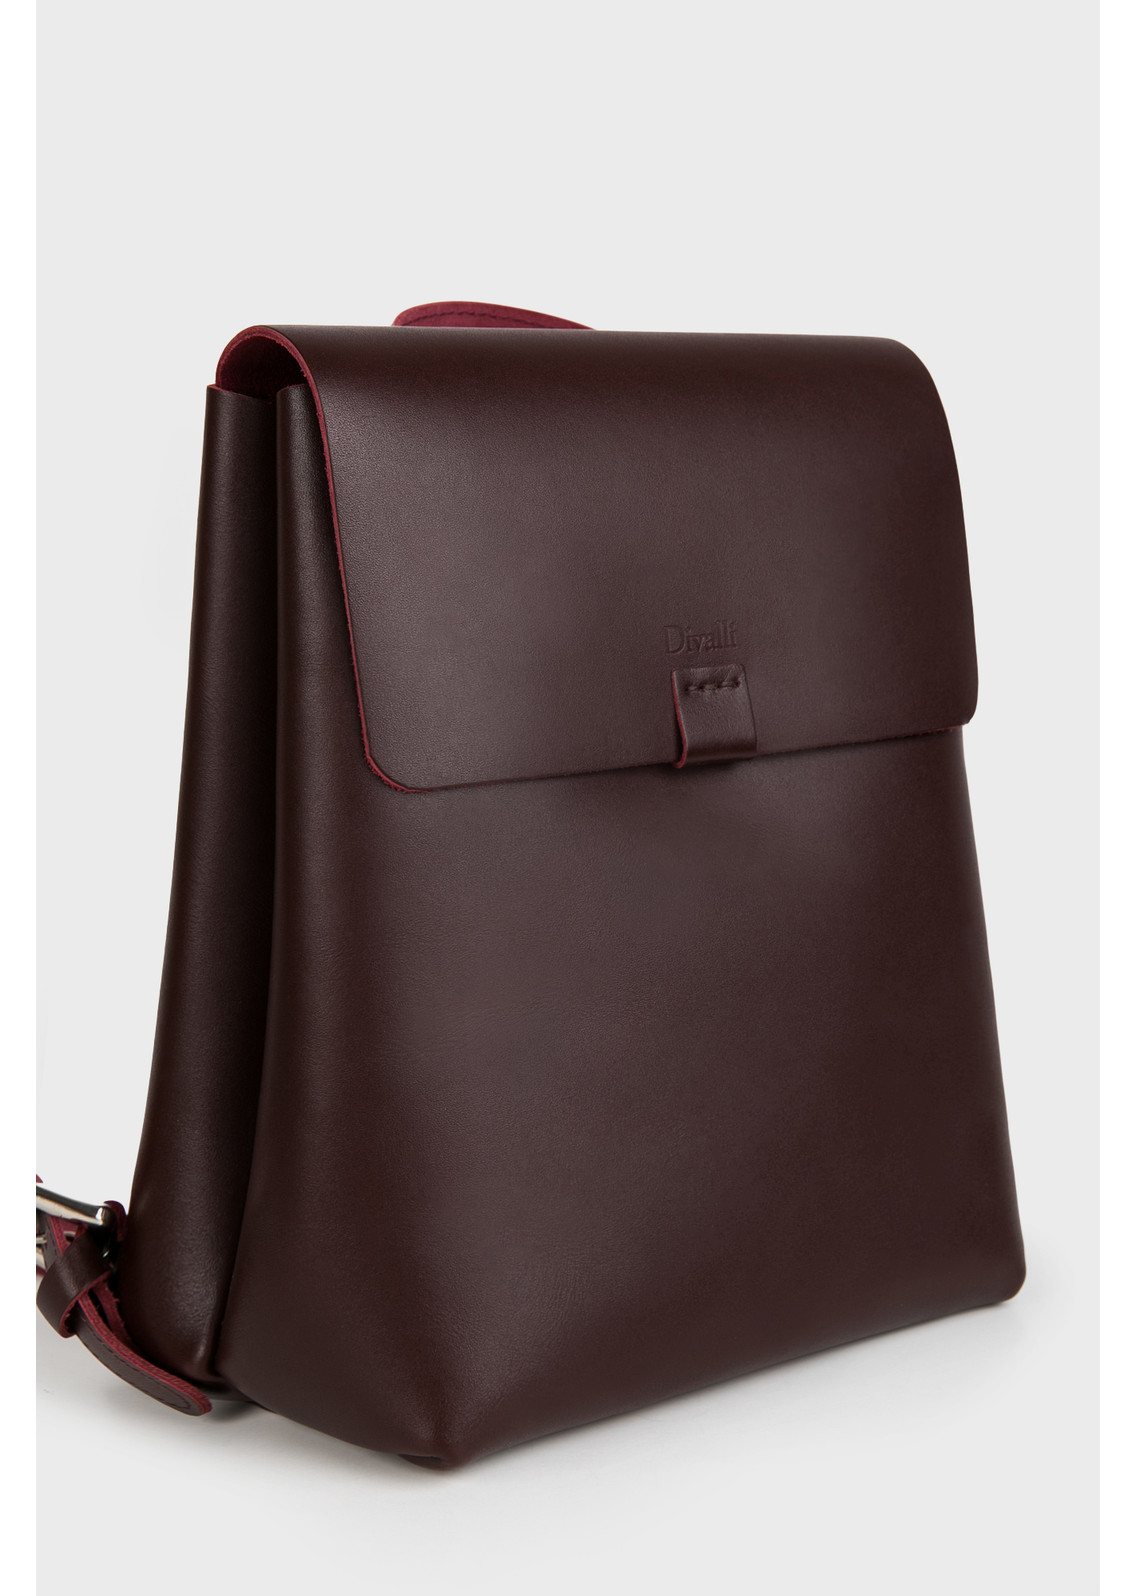 Женский рюкзак из натуральной кожи бордовый B003 burgundy